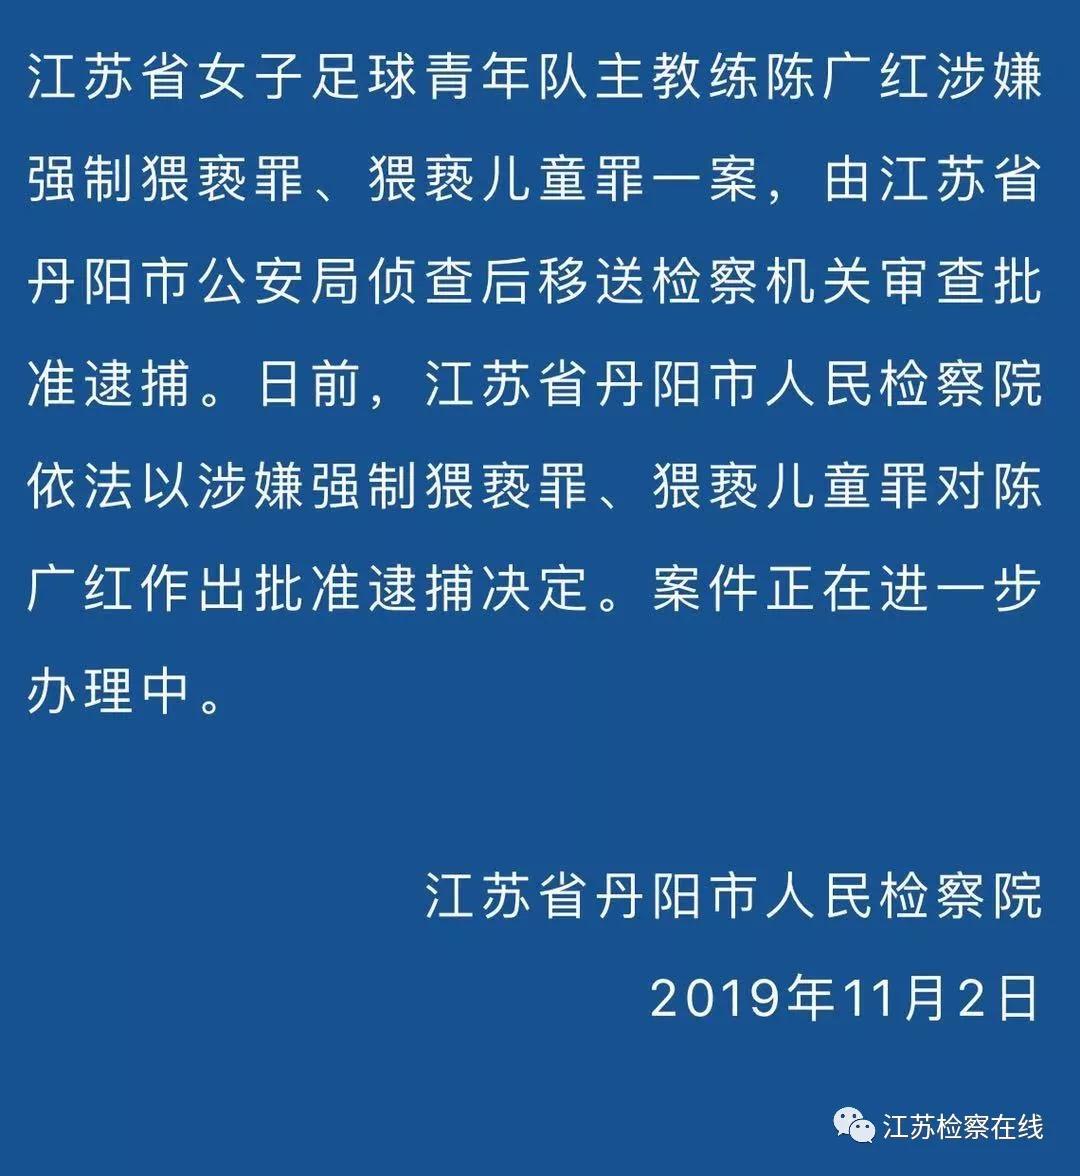 江苏省女子足球青年队主教练陈广红被批准逮捕